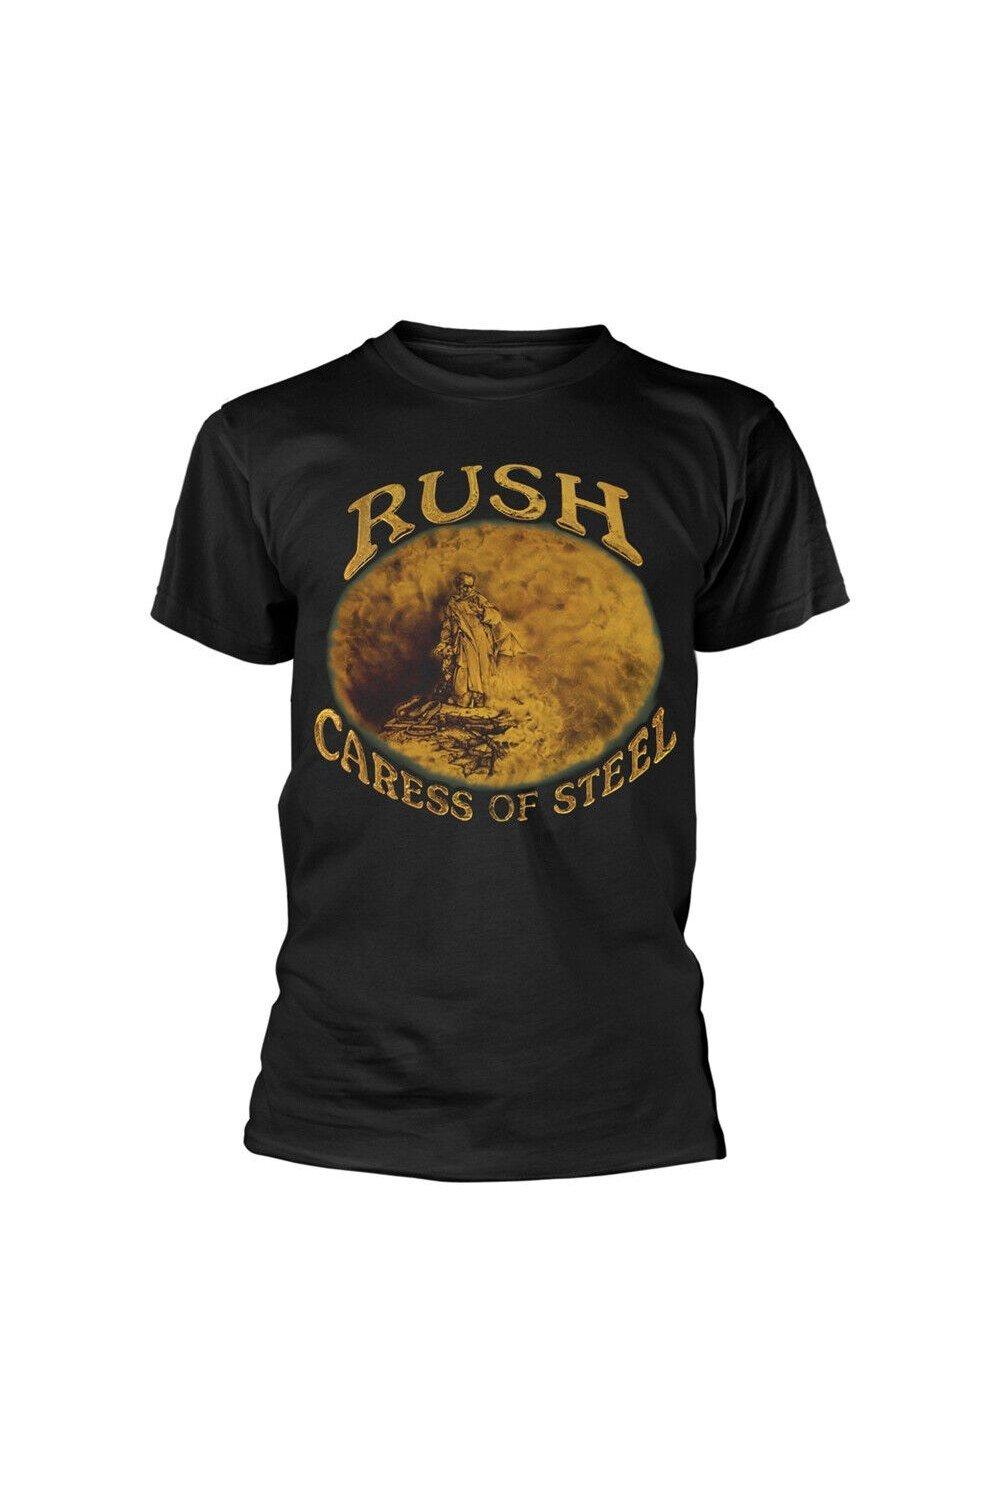 Хлопковая футболка Caress Of Steel Rush, черный